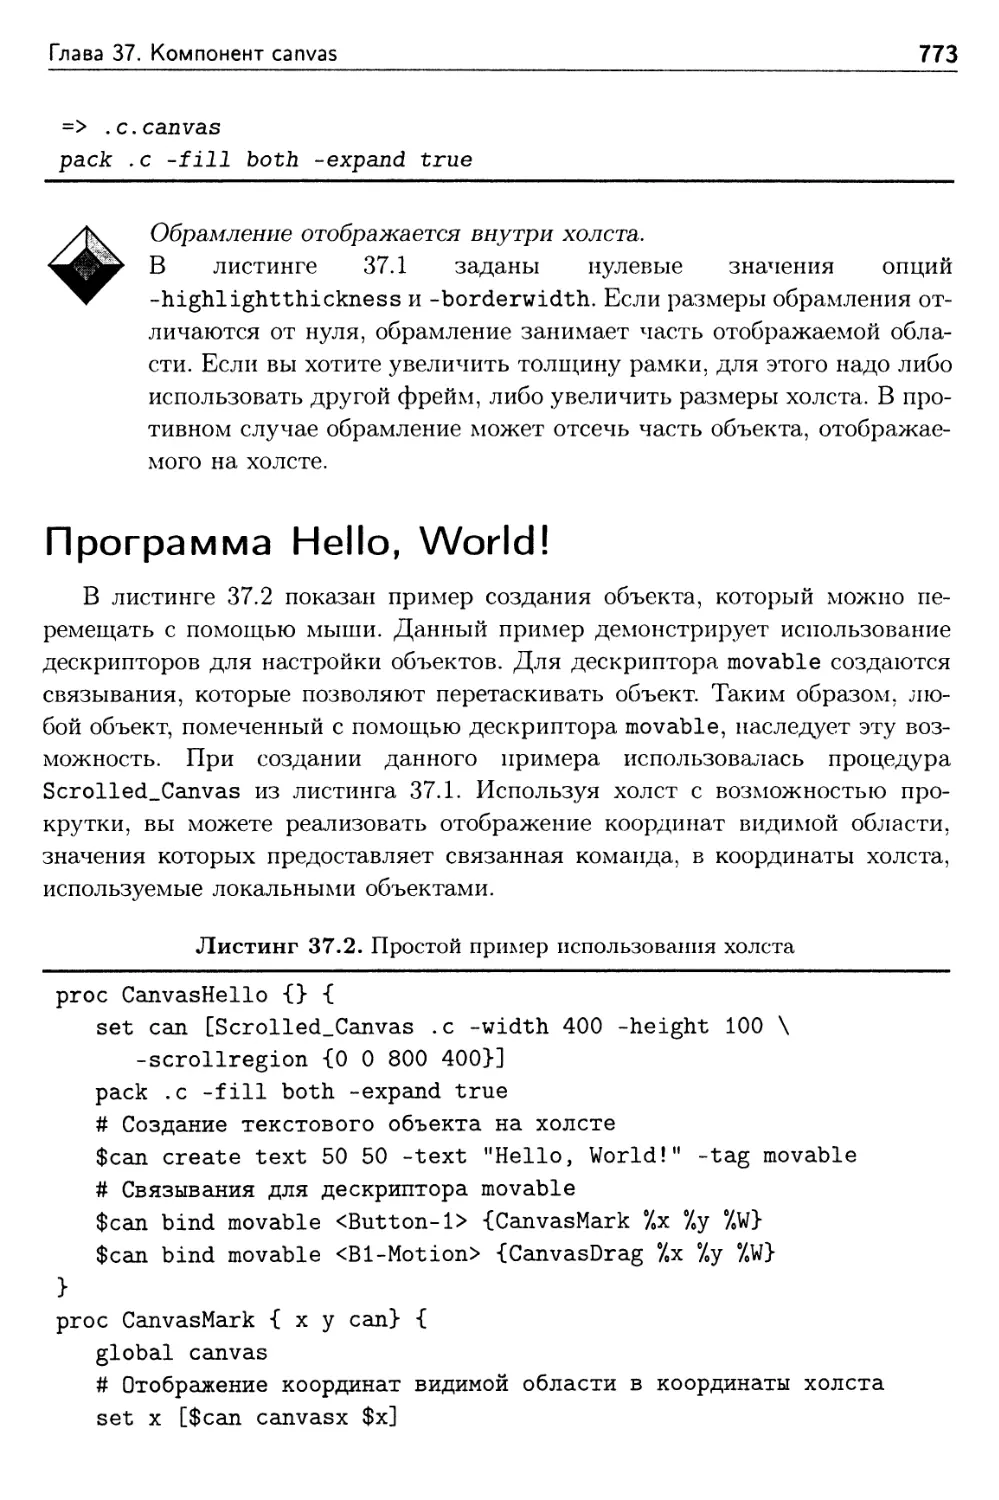 Программа Hello, World!